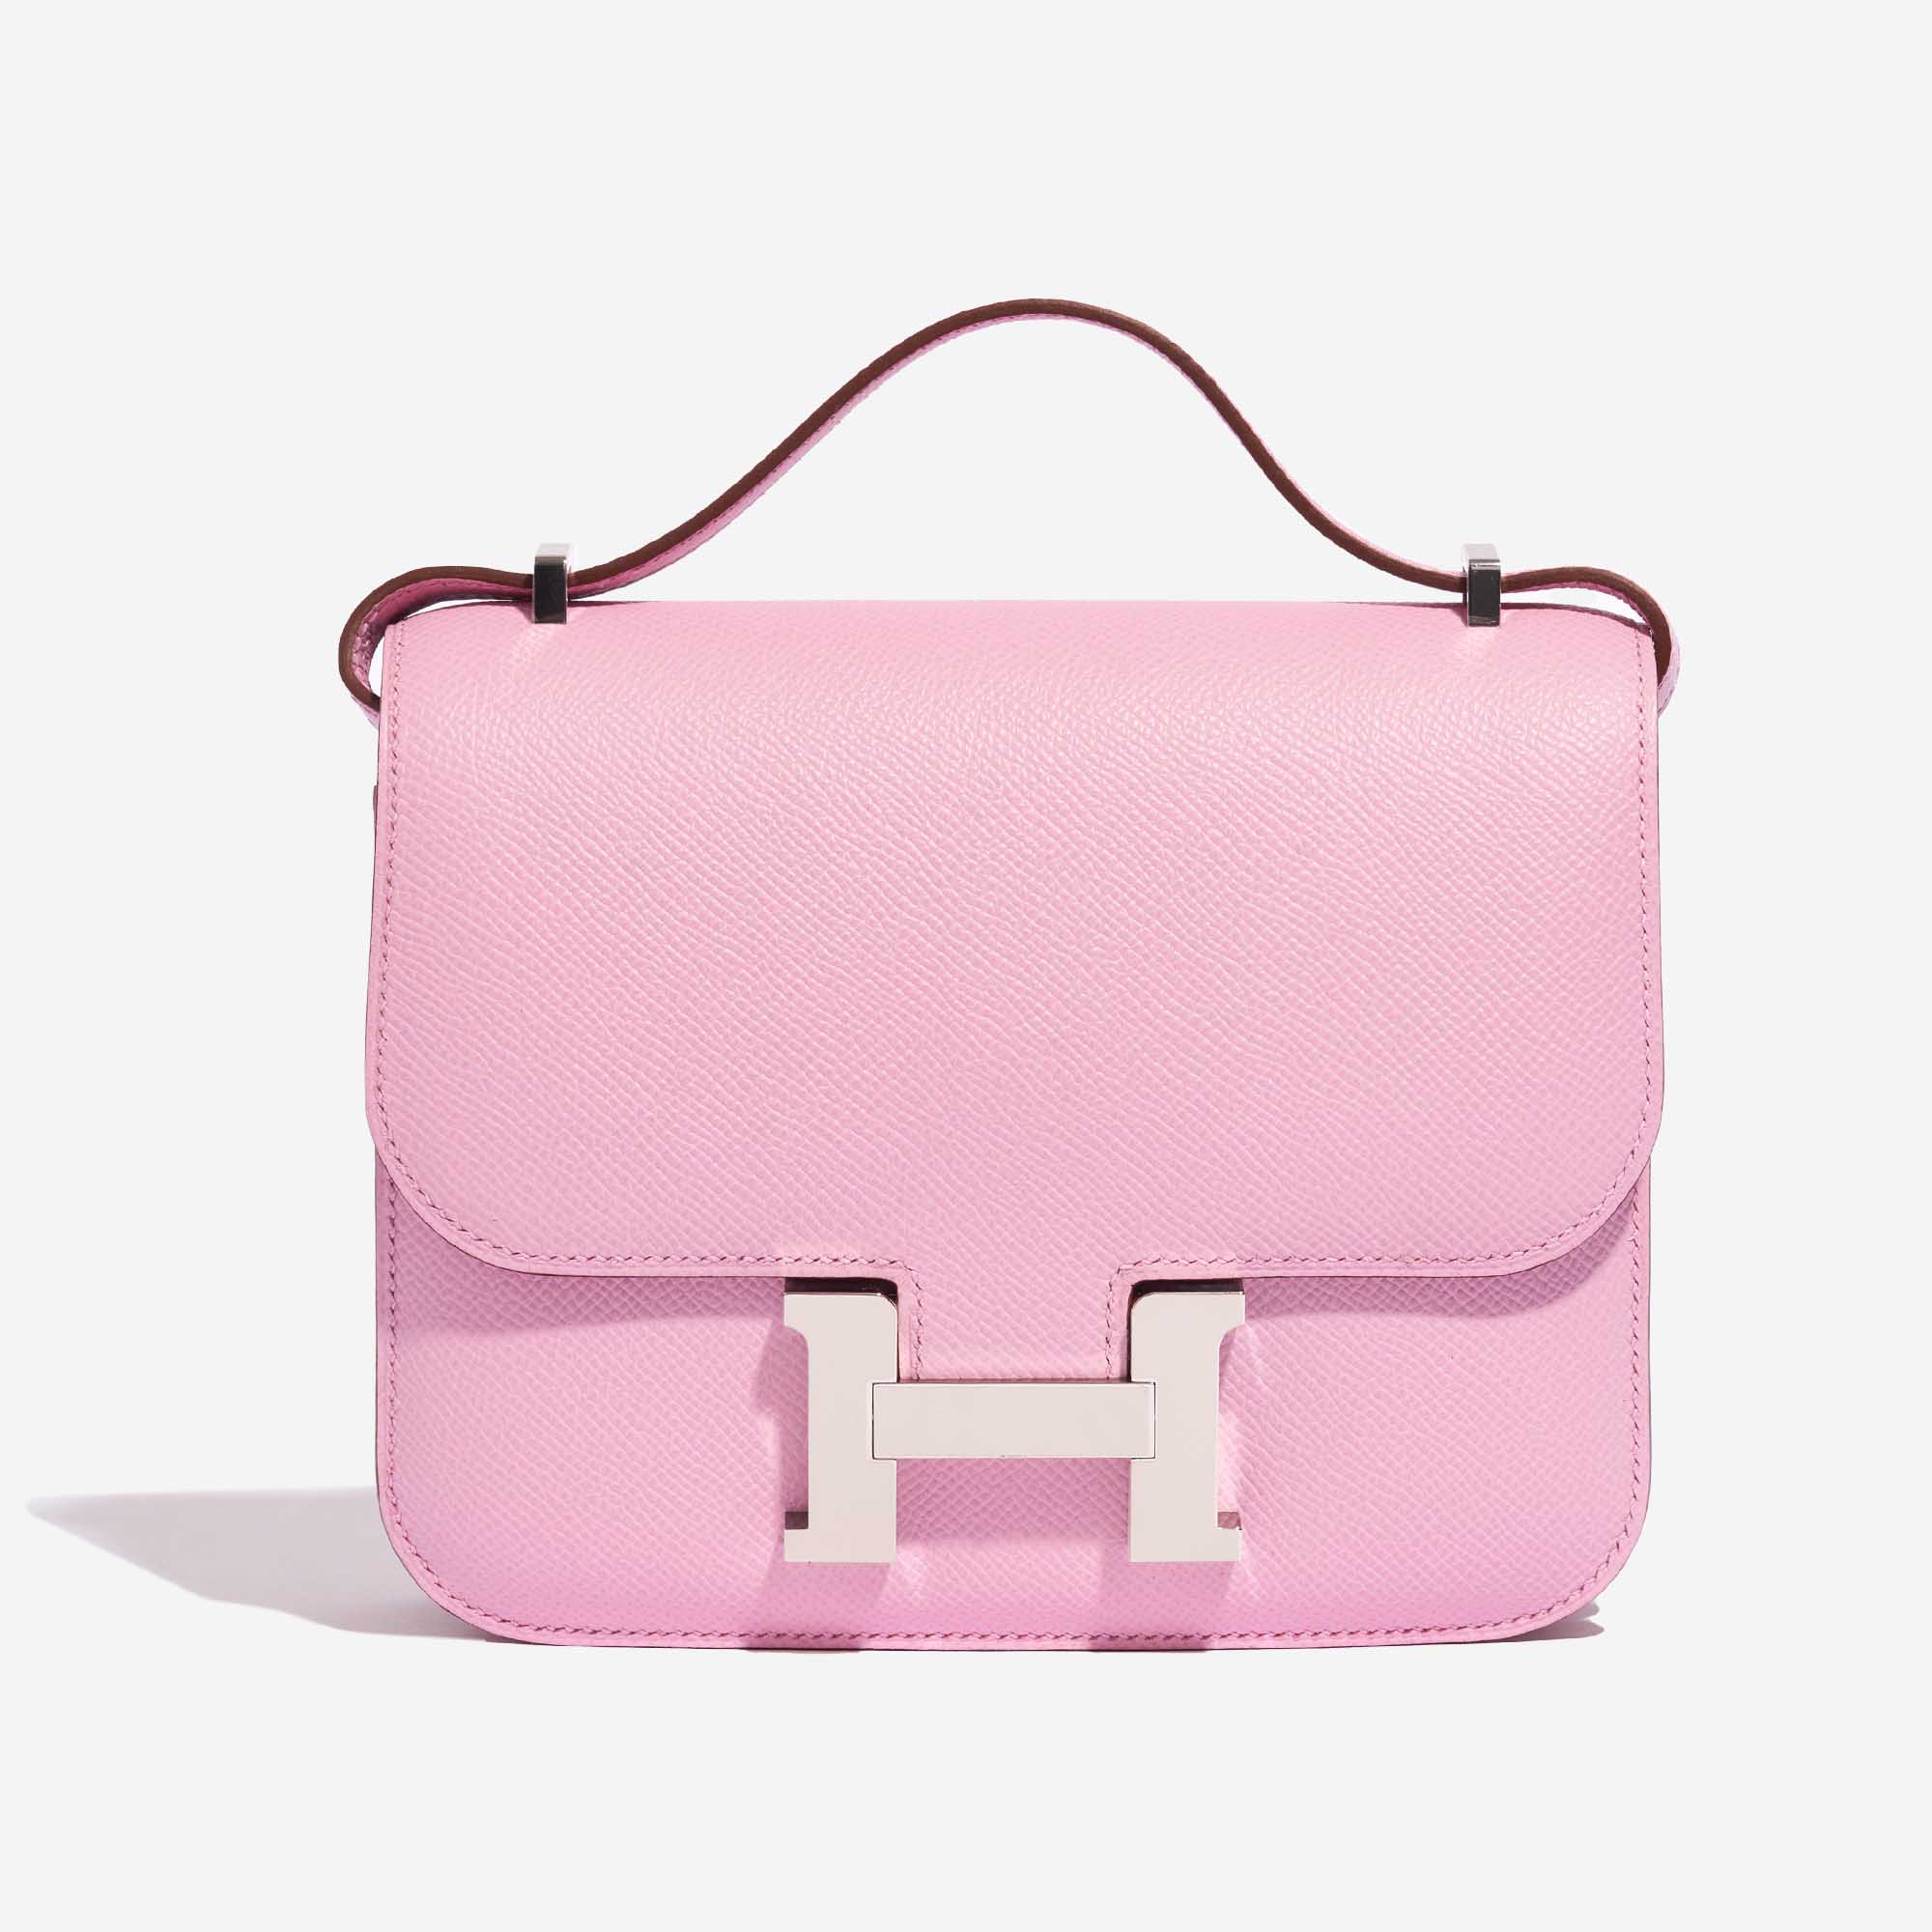 Pre-owned Hermès Tasche Constance 18 Epsom Mauve Sylvestre Pink Front | Verkaufen Sie Ihre Designer-Tasche auf Saclab.com